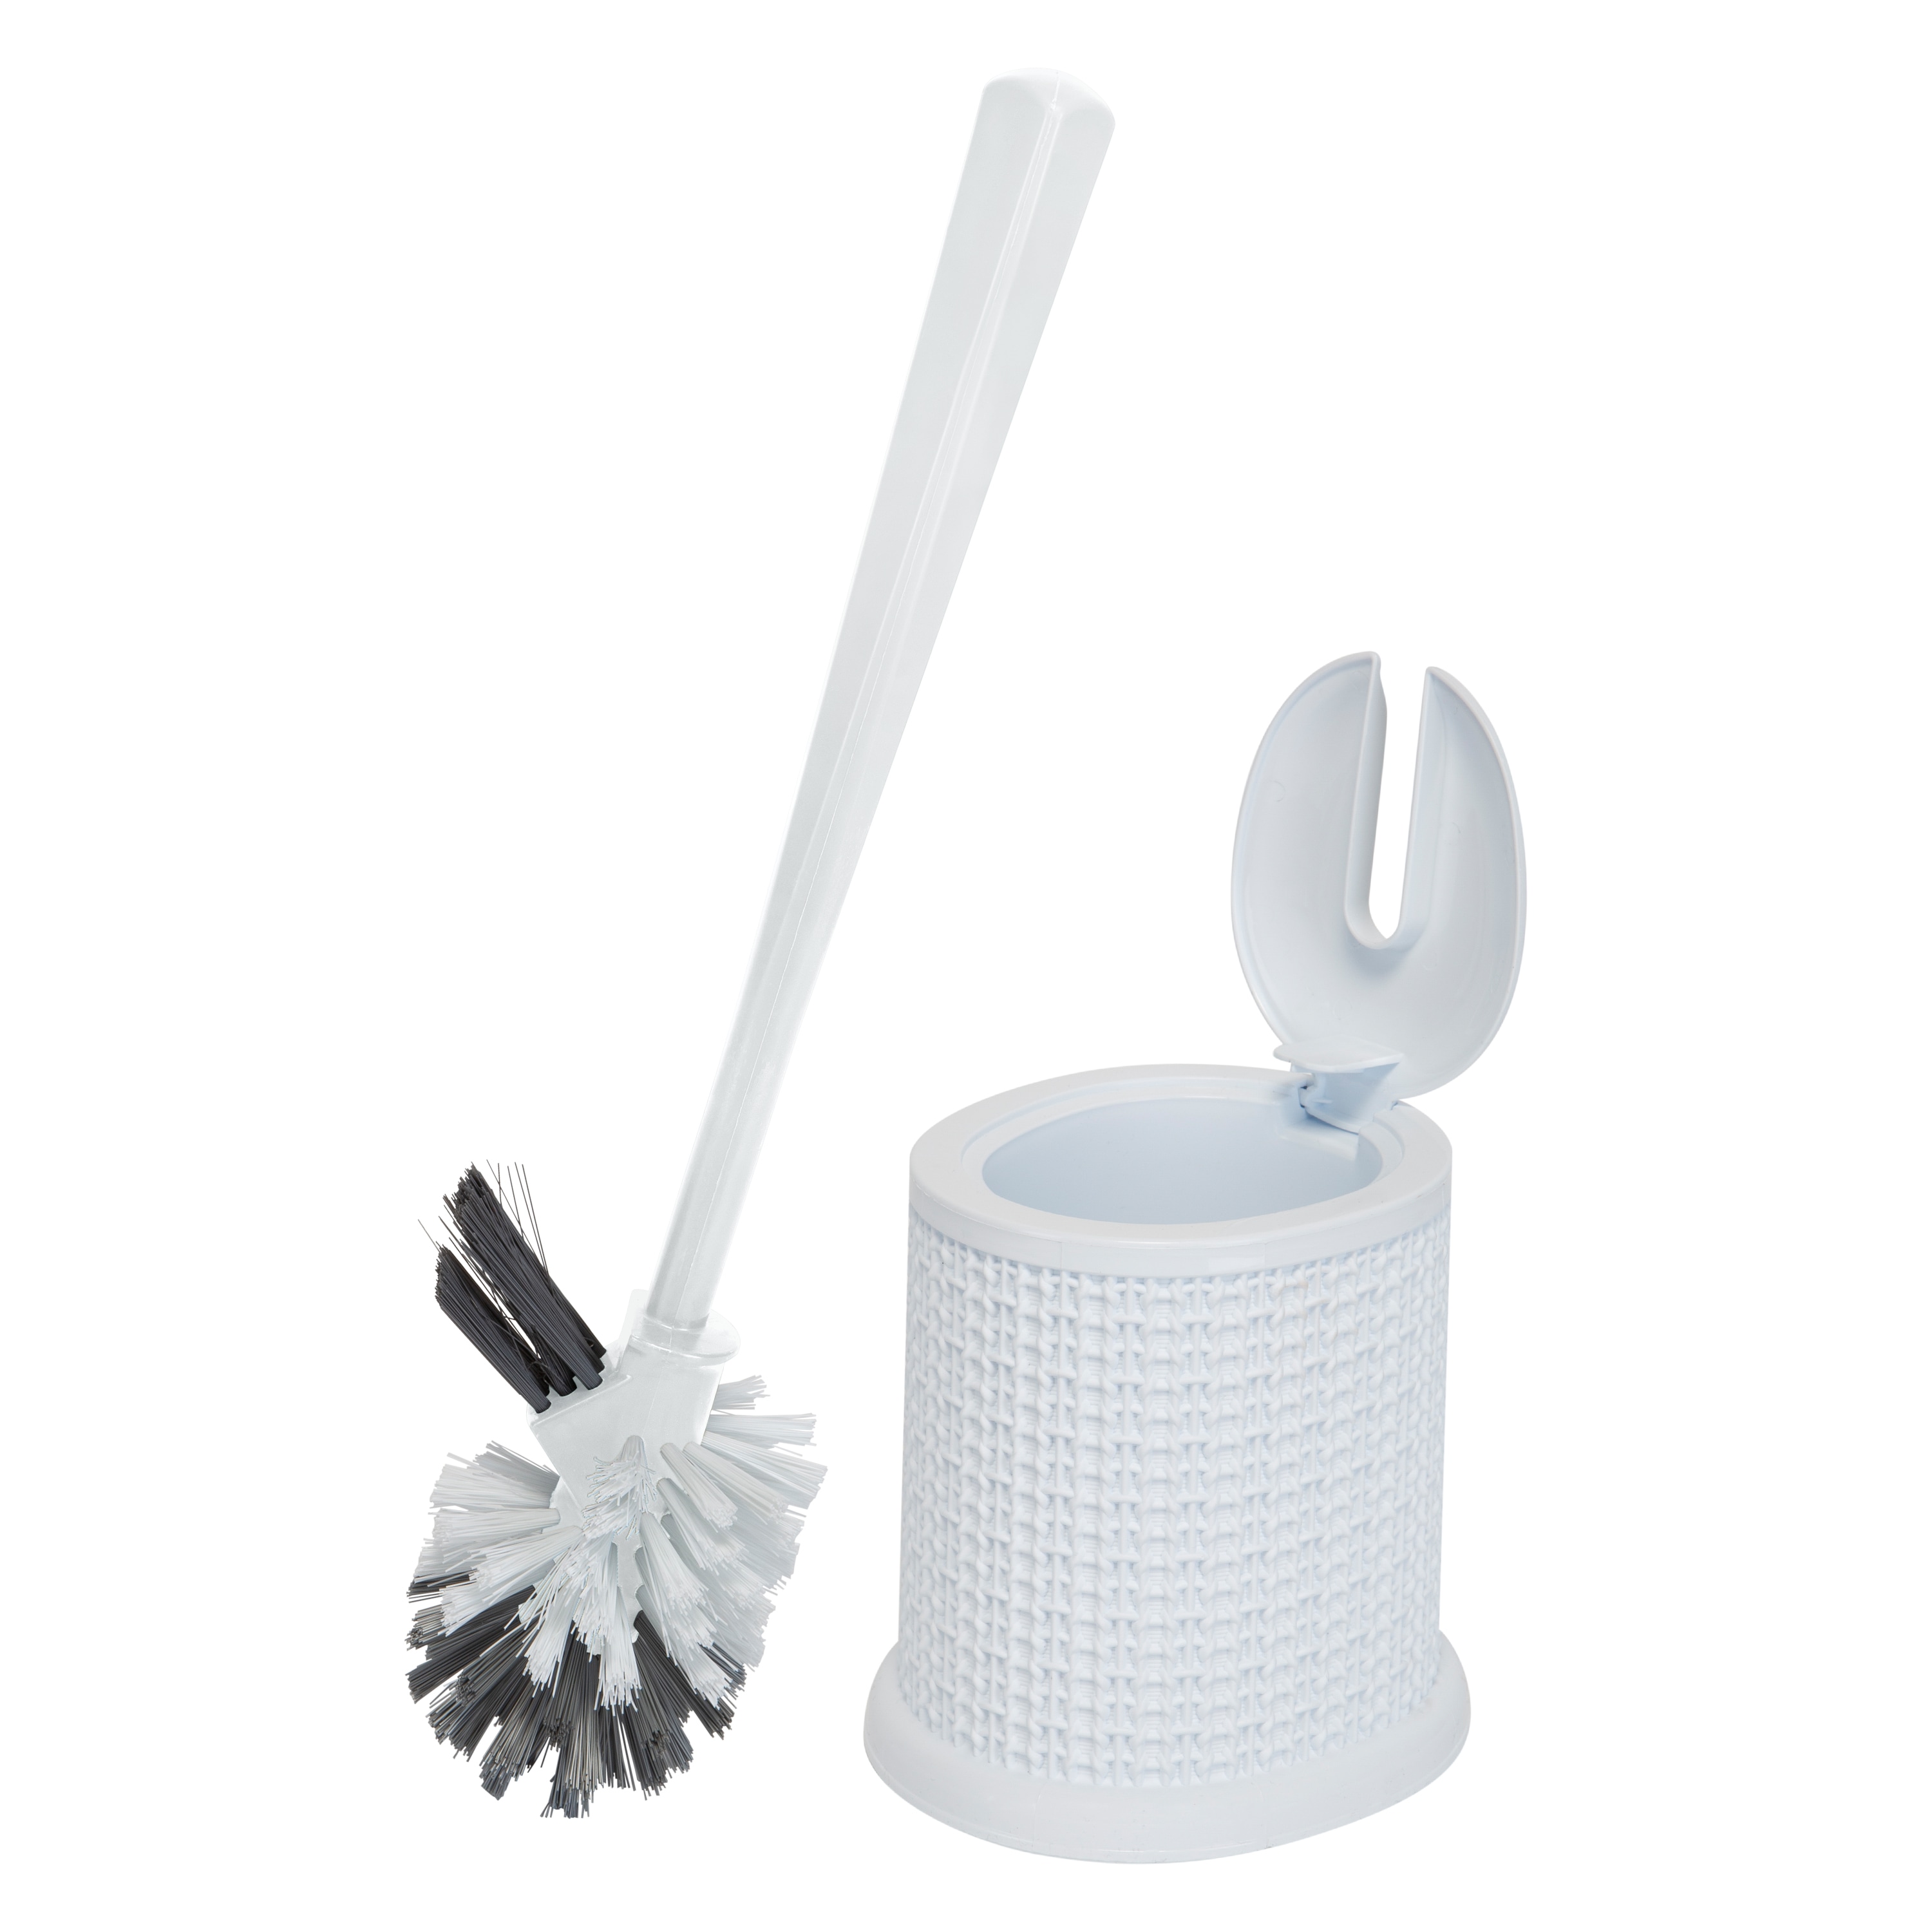 Tyroler Bright Tools Toilet Brush Set,Bathroom Cleaning Toilet Bowl Brush Holder